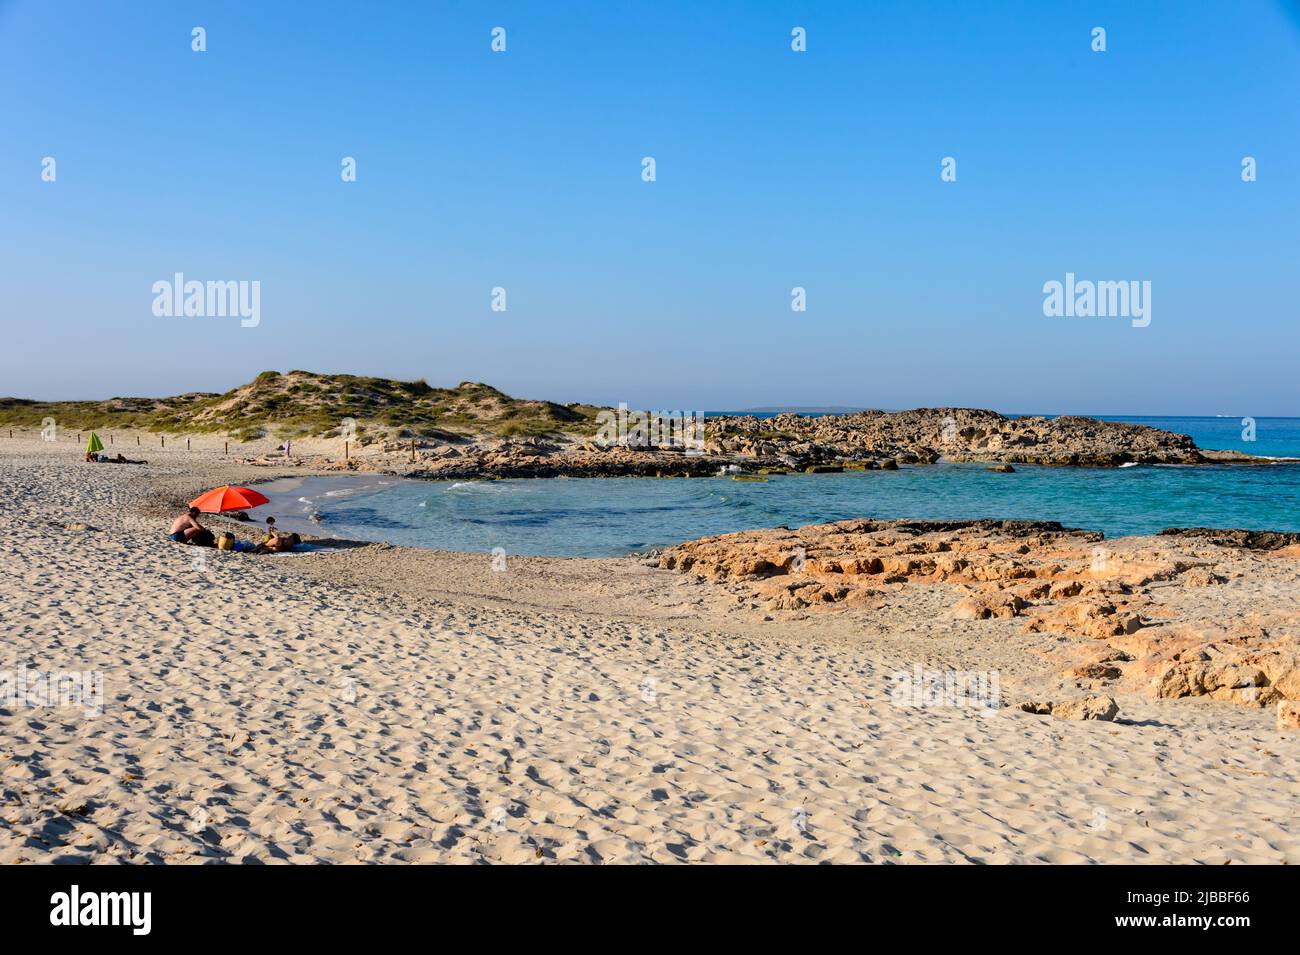 Spiaggia di 'es Trucadors' sull'isola di Formentera. Situato a nord-est dell'isola. Con accesso attraverso una passerella in legno a una zona tranquilla di sabbia e cr Foto Stock